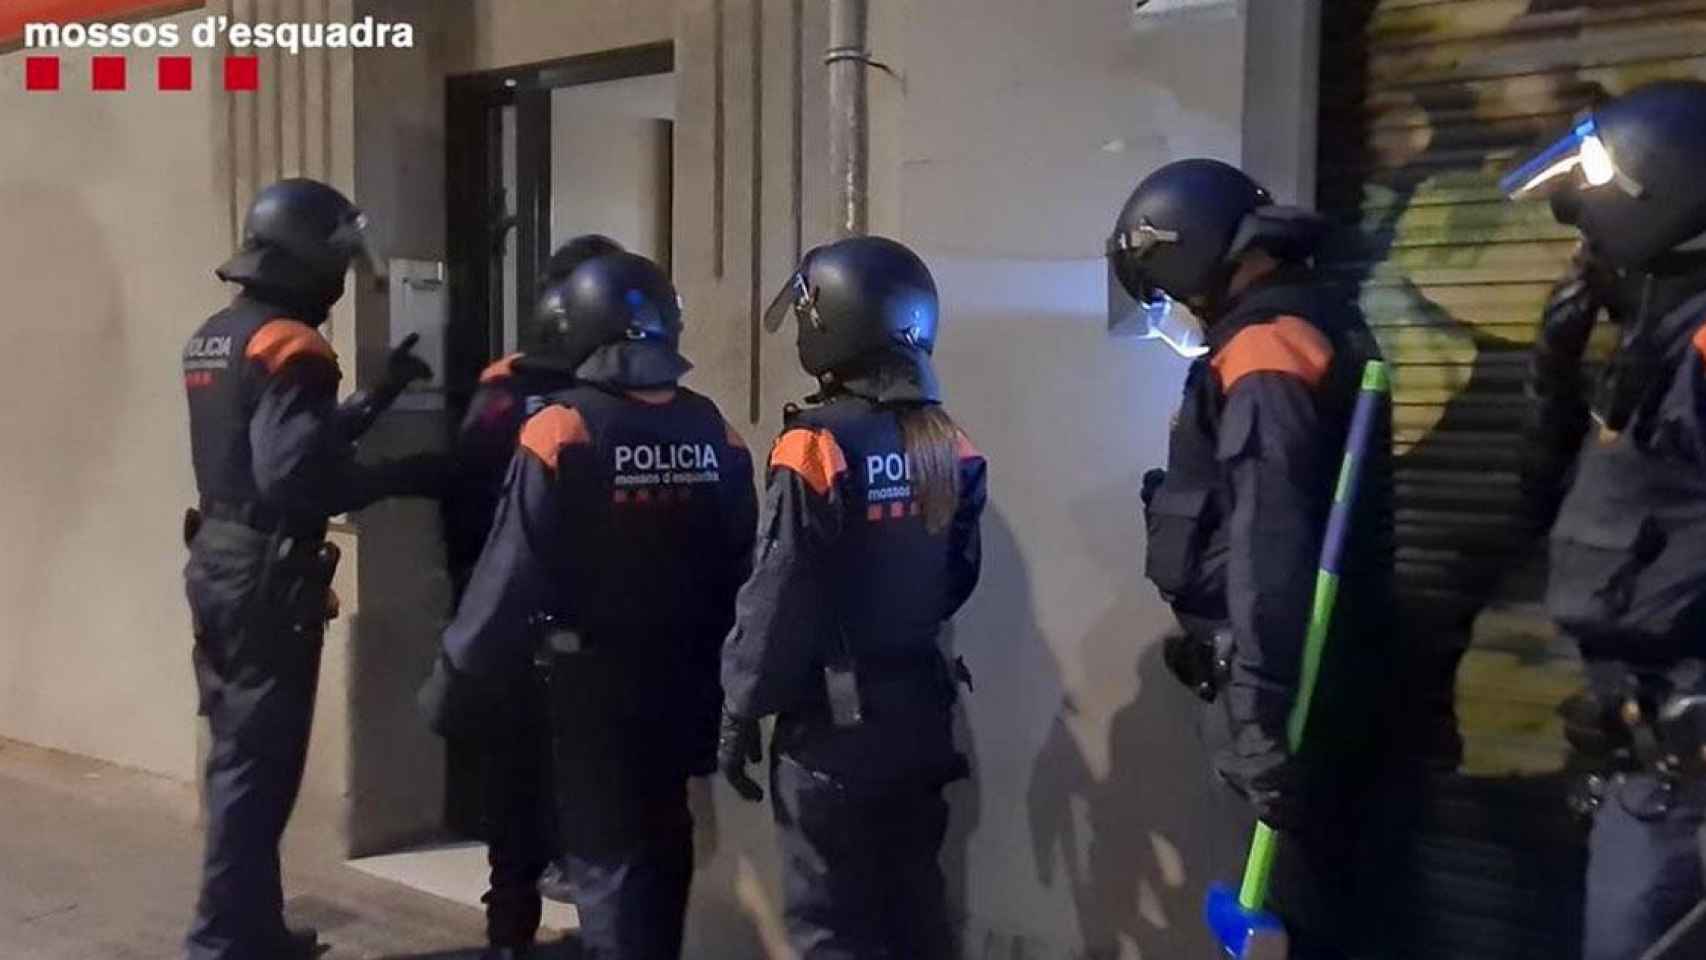 Intervención de la policía catalana en busca de drogas en un narcopiso / MOSSOS